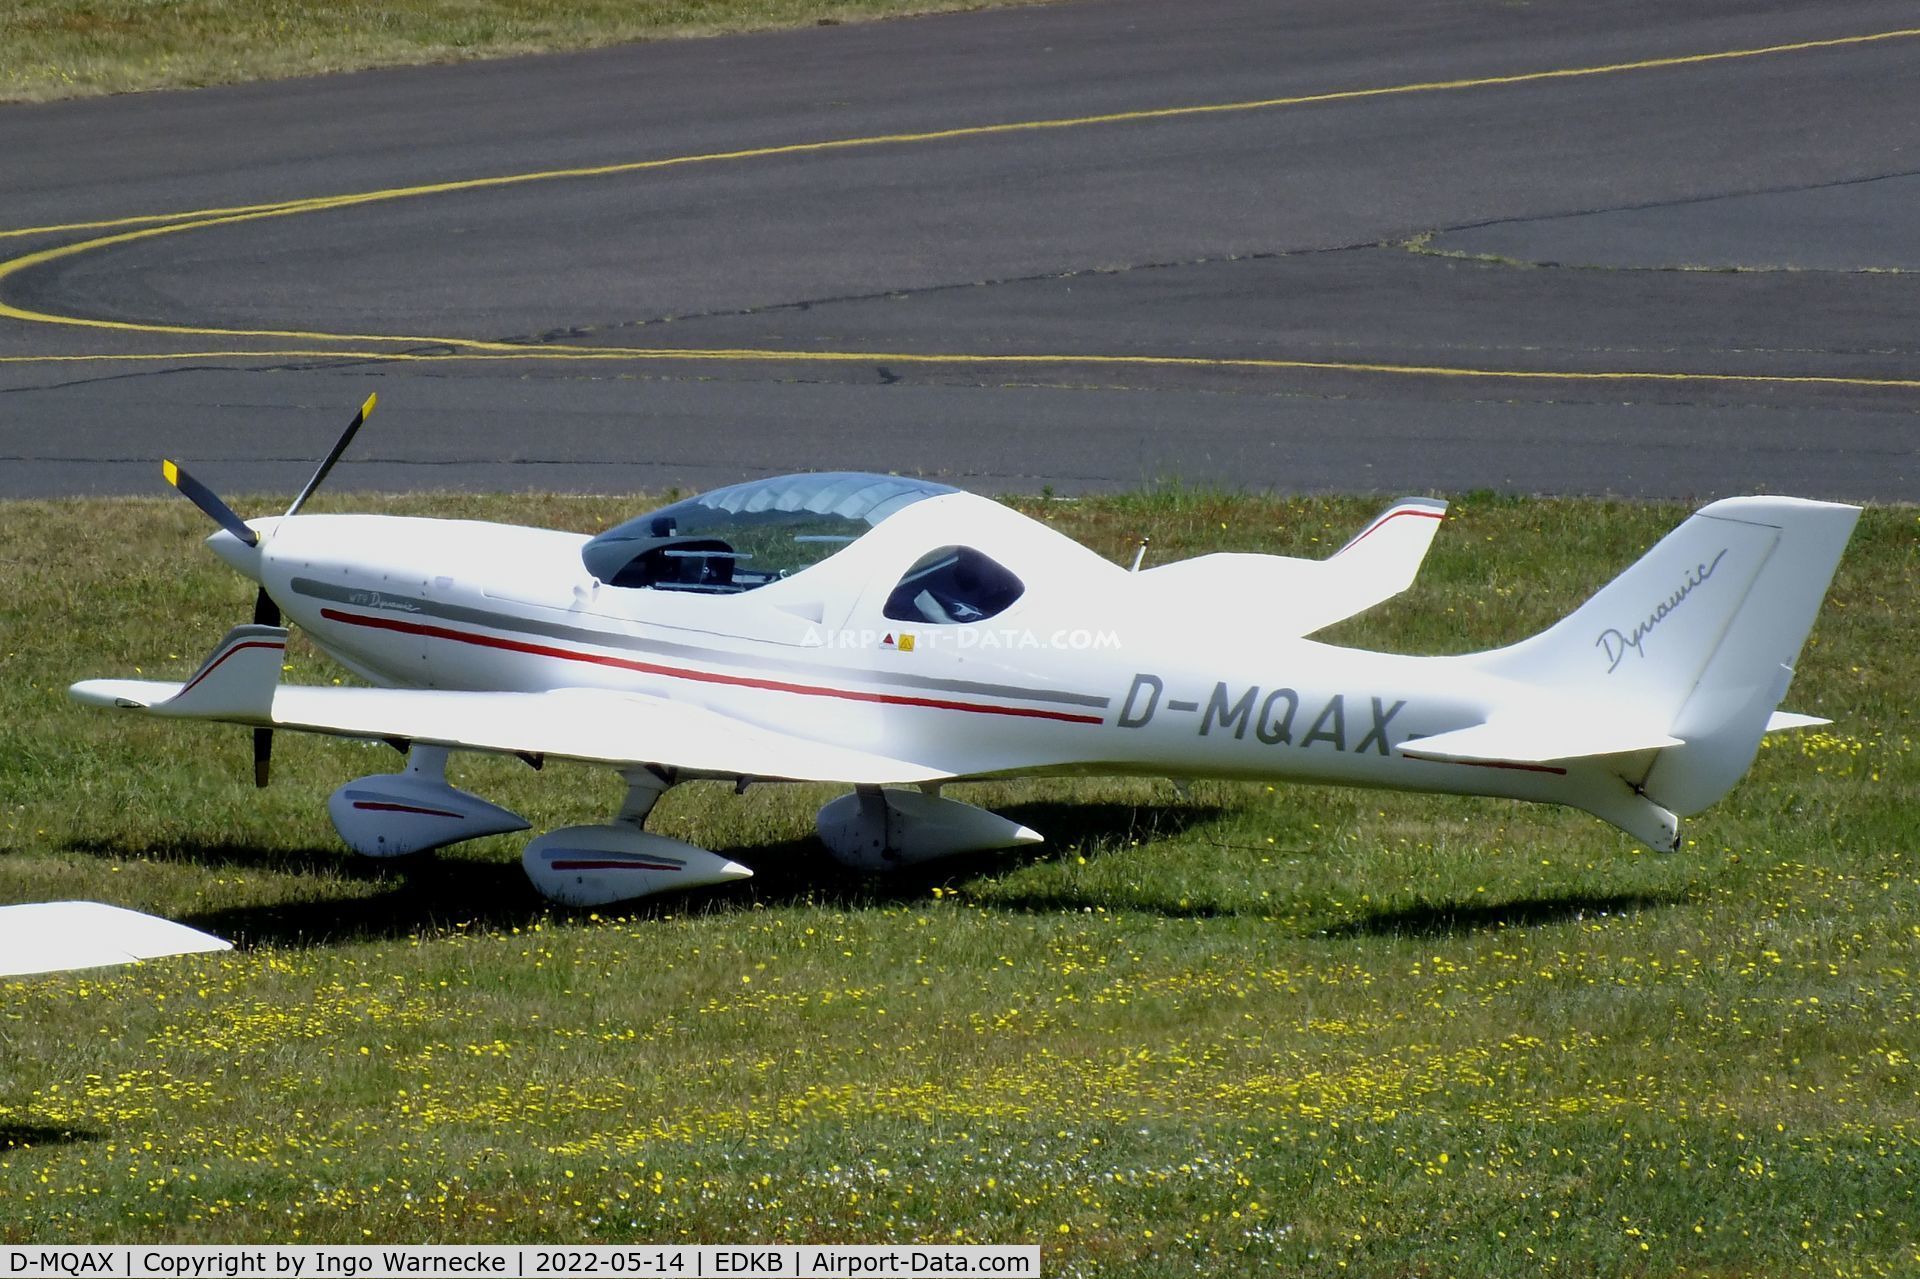 D-MQAX, Aerospool WT-9 Dynamic C/N not found_D_MQAX, Aerospool WT-9 Dynamic at Bonn-Hangelar airfield '2205-06